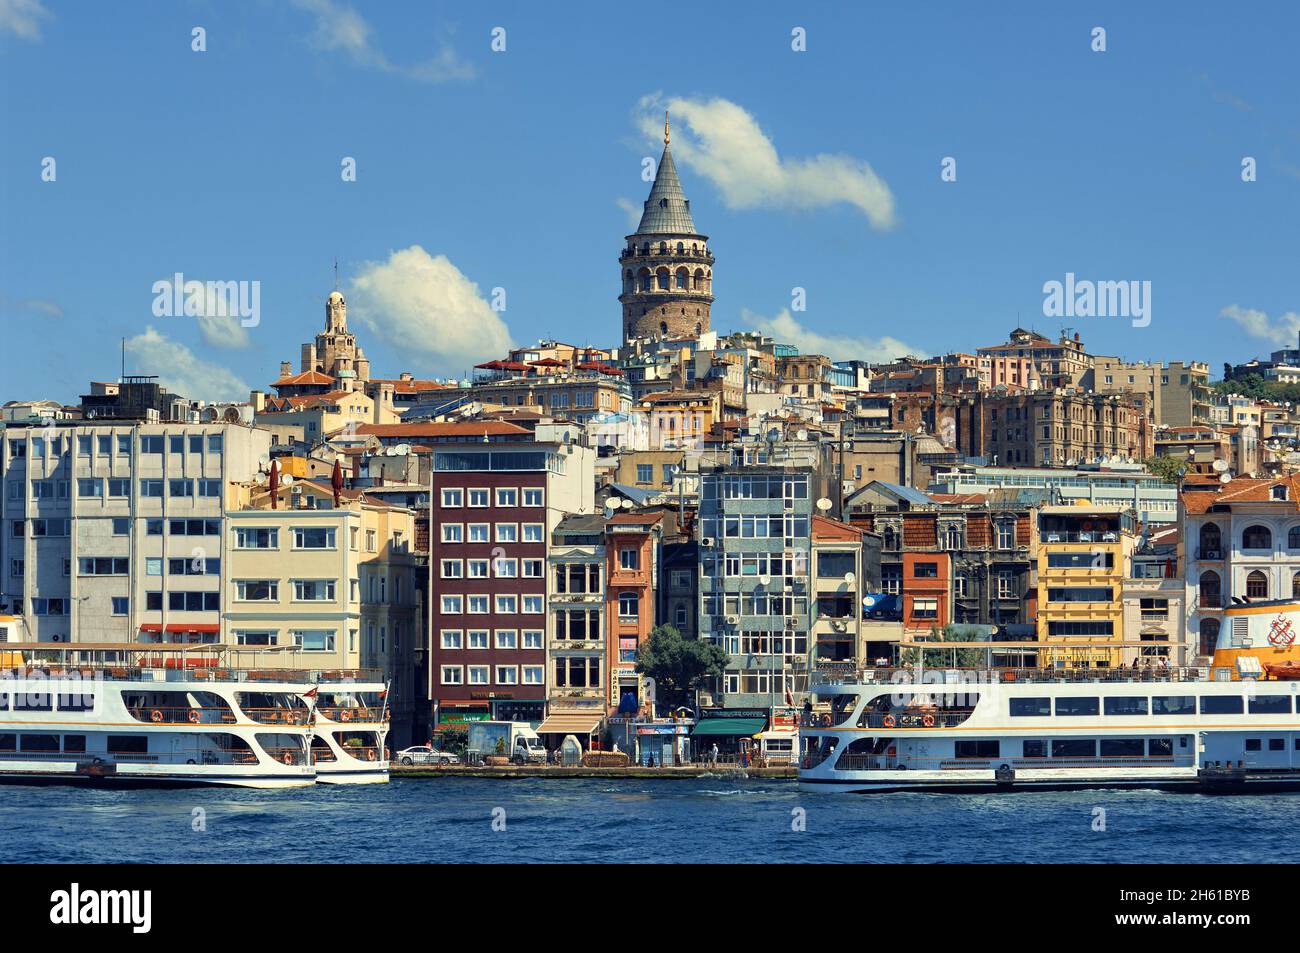 Il colorato skyline della città di Istanbul con il simbolo della Torre Galata nel quartiere Beyoglu, Turchia Foto Stock